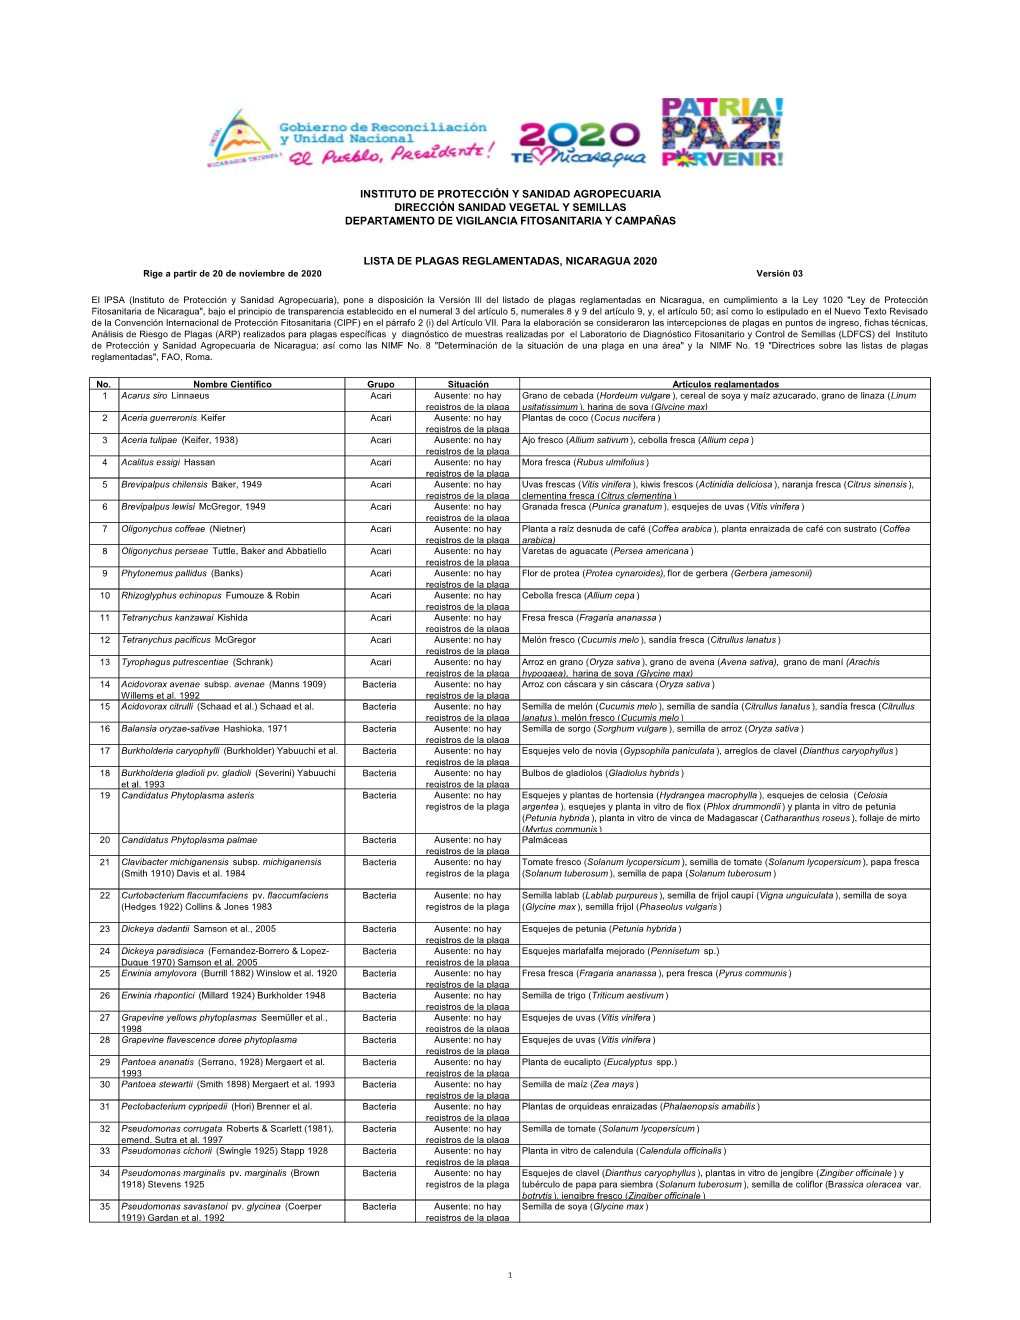 Lista De Plagas Reglamentadas De Nicaragua 2020.Xlsx